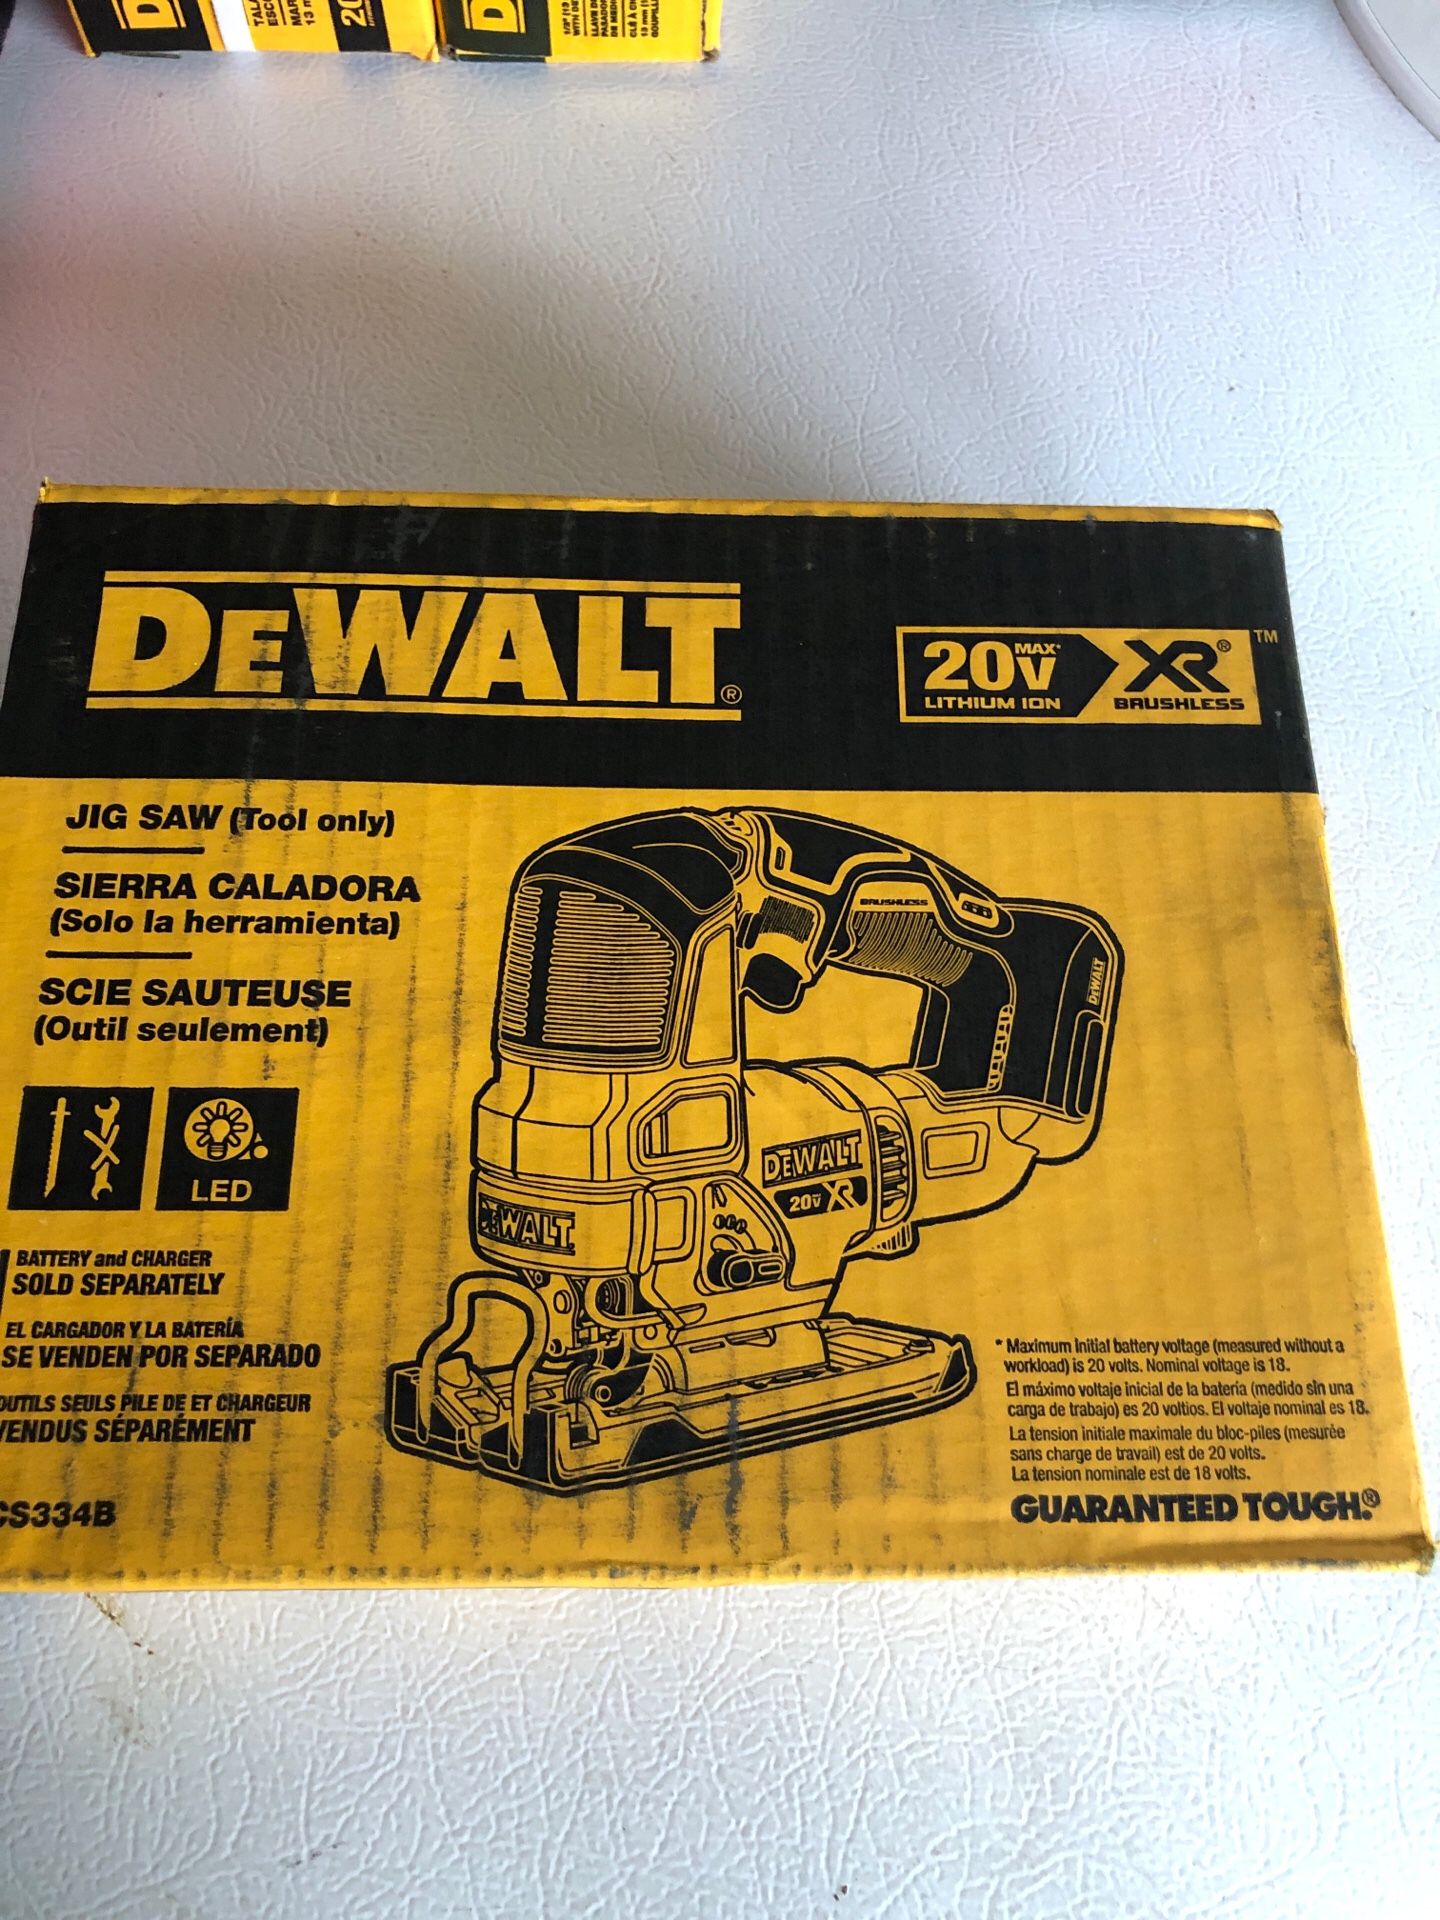 Brand new Dewalt XR jigsaw